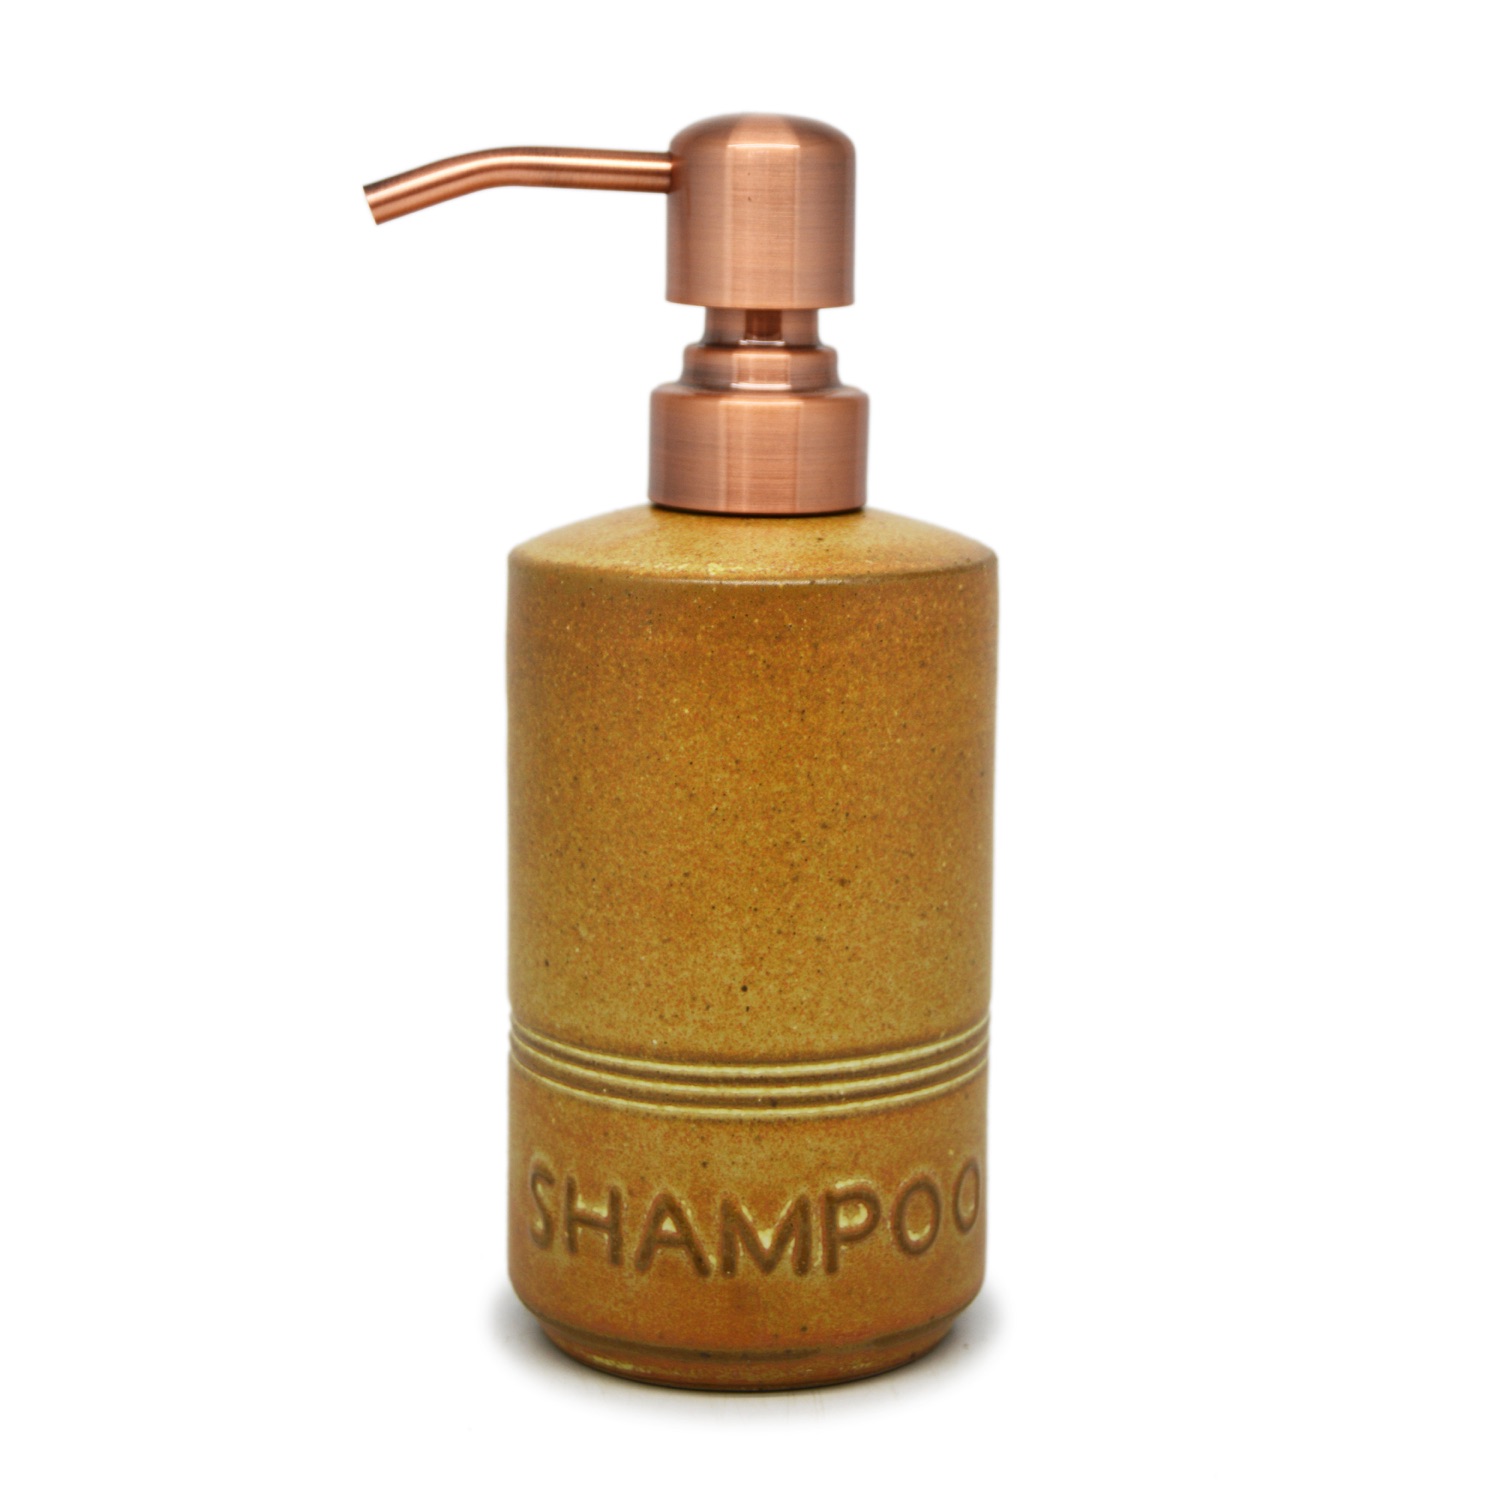 Pillar Liquid Dispenser - Shampoo - Brass Plated Pump